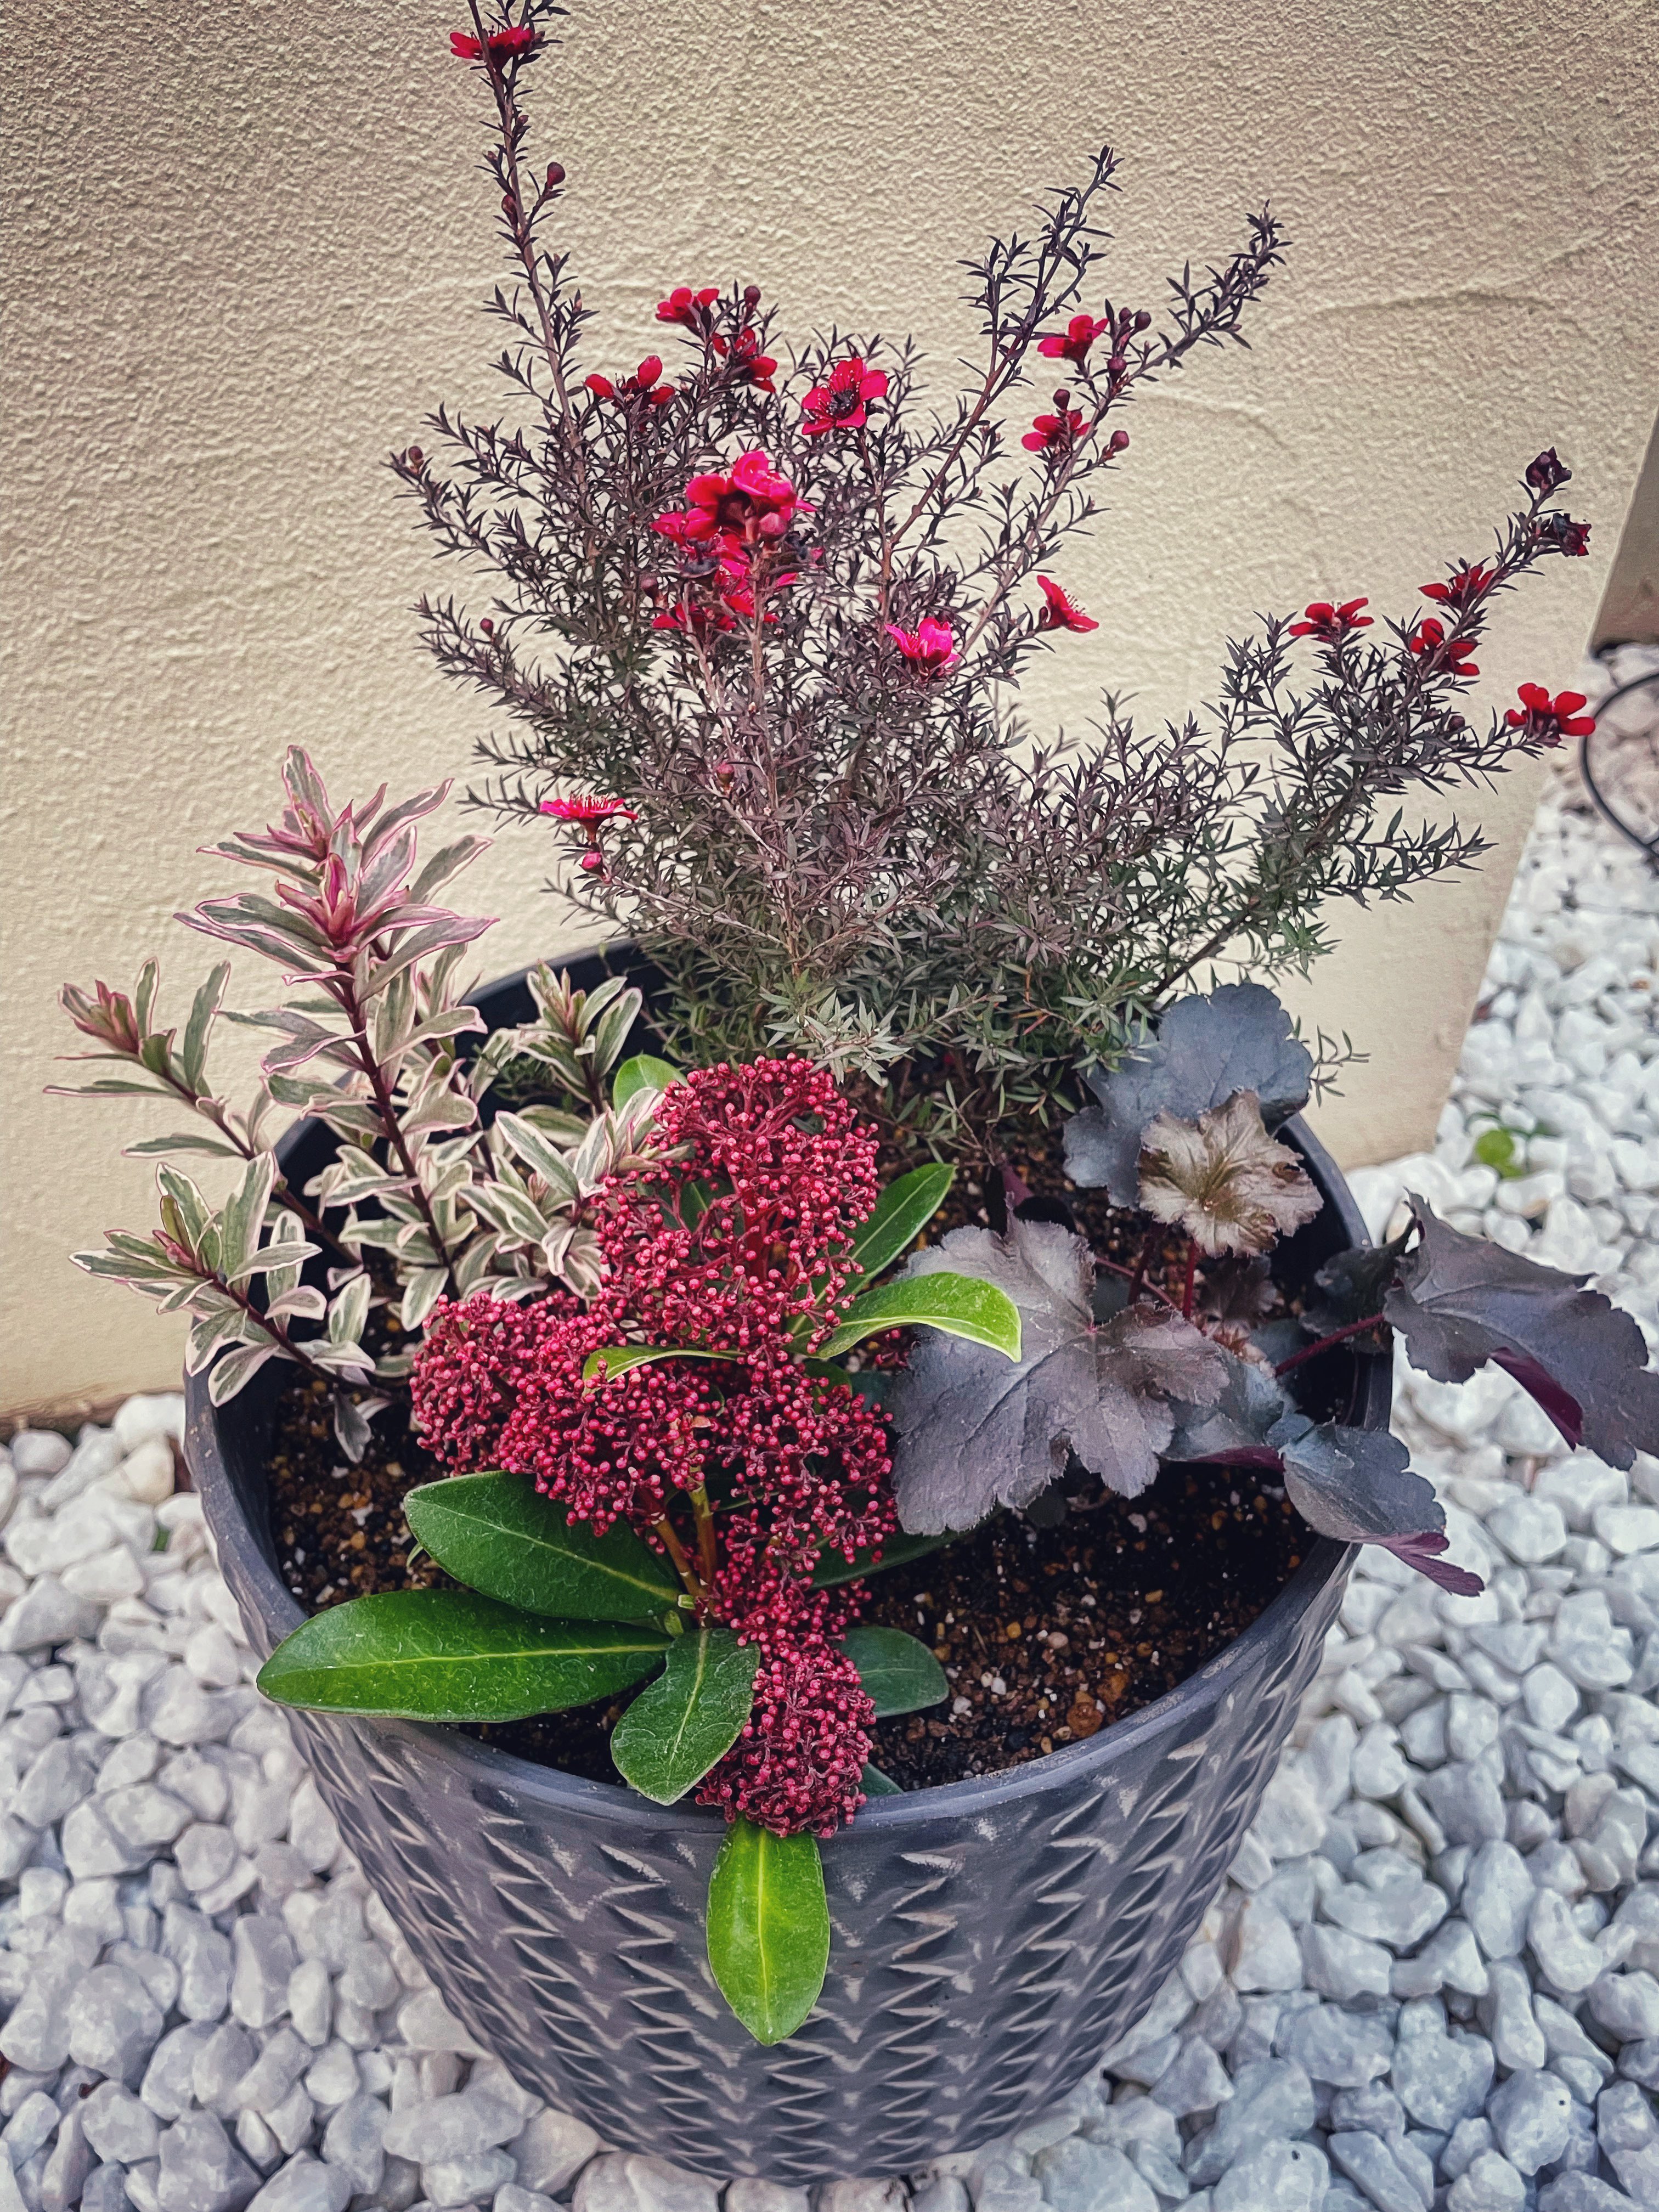 なないろ卯月 クリスマスツリーは無いので 冬カラーの寄せ植えを作りまして 赤い花 ギョリュウバイのベルベット感に一目惚れしてしまった ぷちぷちしたのがスキミア 葉物はへーべ ヒューケラ T Co Cnulirxqjo Twitter